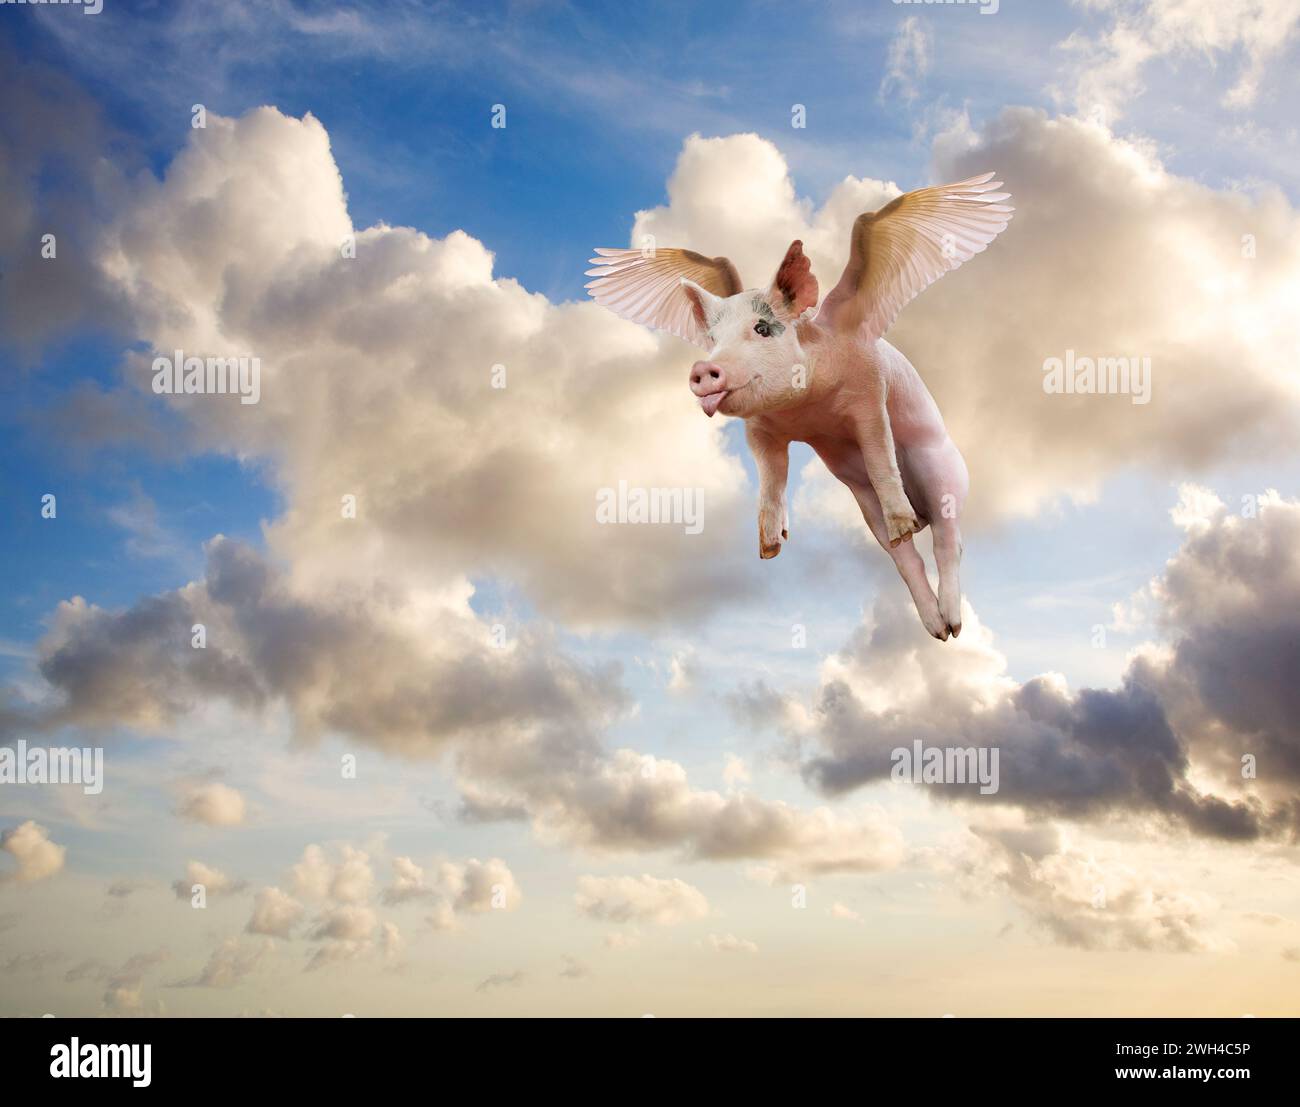 Un cochon sort sa langue alors qu'il s'élève à travers un ciel dramatique dans une image sur les possibilités, l'impossible, l'inattendu et l'imagination. Banque D'Images